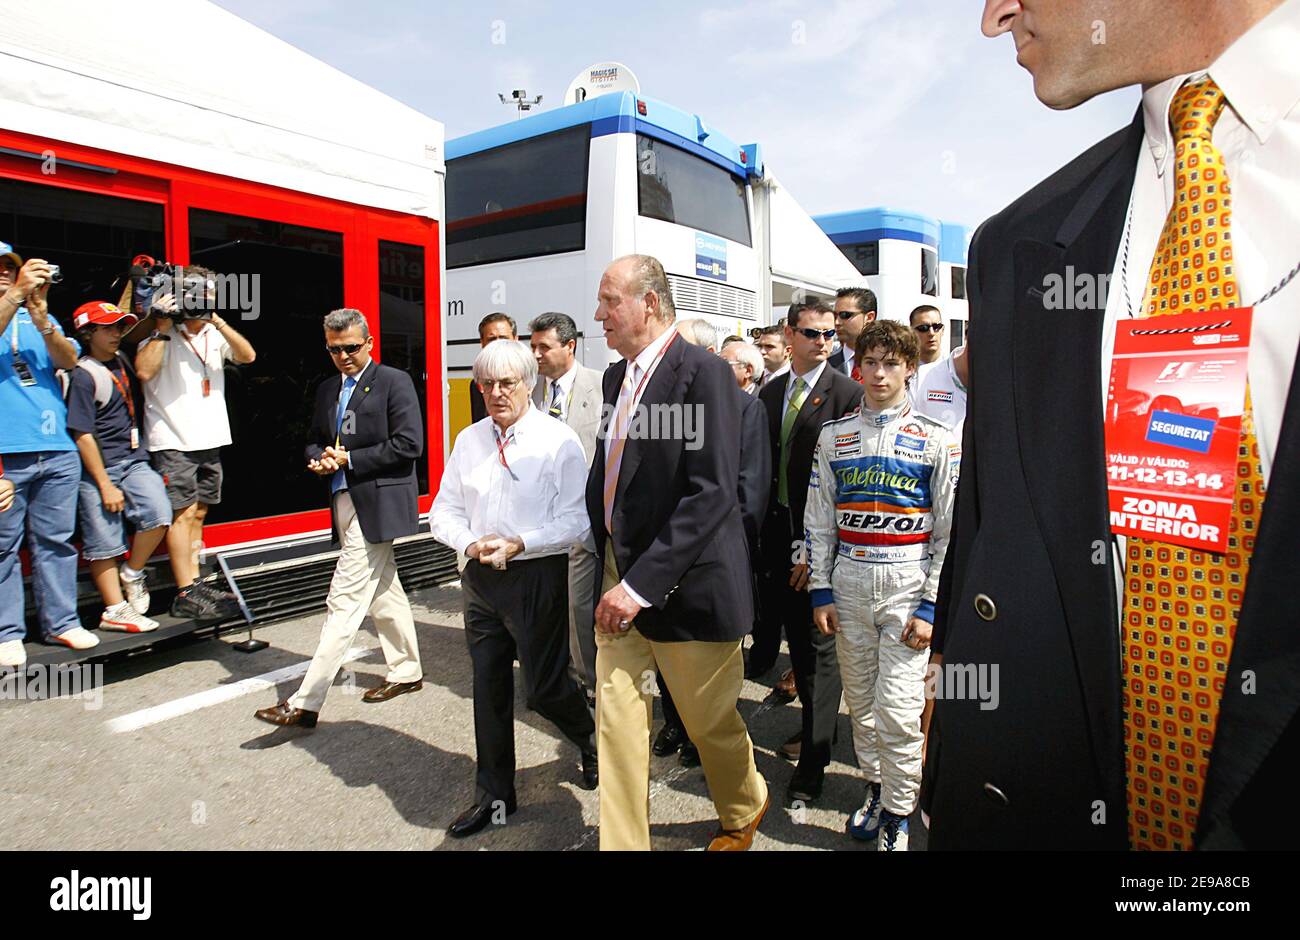 Re Juan Carlos di Spagna cammina nel paddock con Bernie Ecclestone, boss della FOM, e Javier sola, pilota spagnolo della GP2, durante la sua visita al Gran Premio di Formula 1, che si tiene sulla pista Catalunya nei pressi di Barcellona, in Spagna, il 14 maggio 2006. Foto di Patrick Bernard/ABACAPRESS.COM Foto Stock